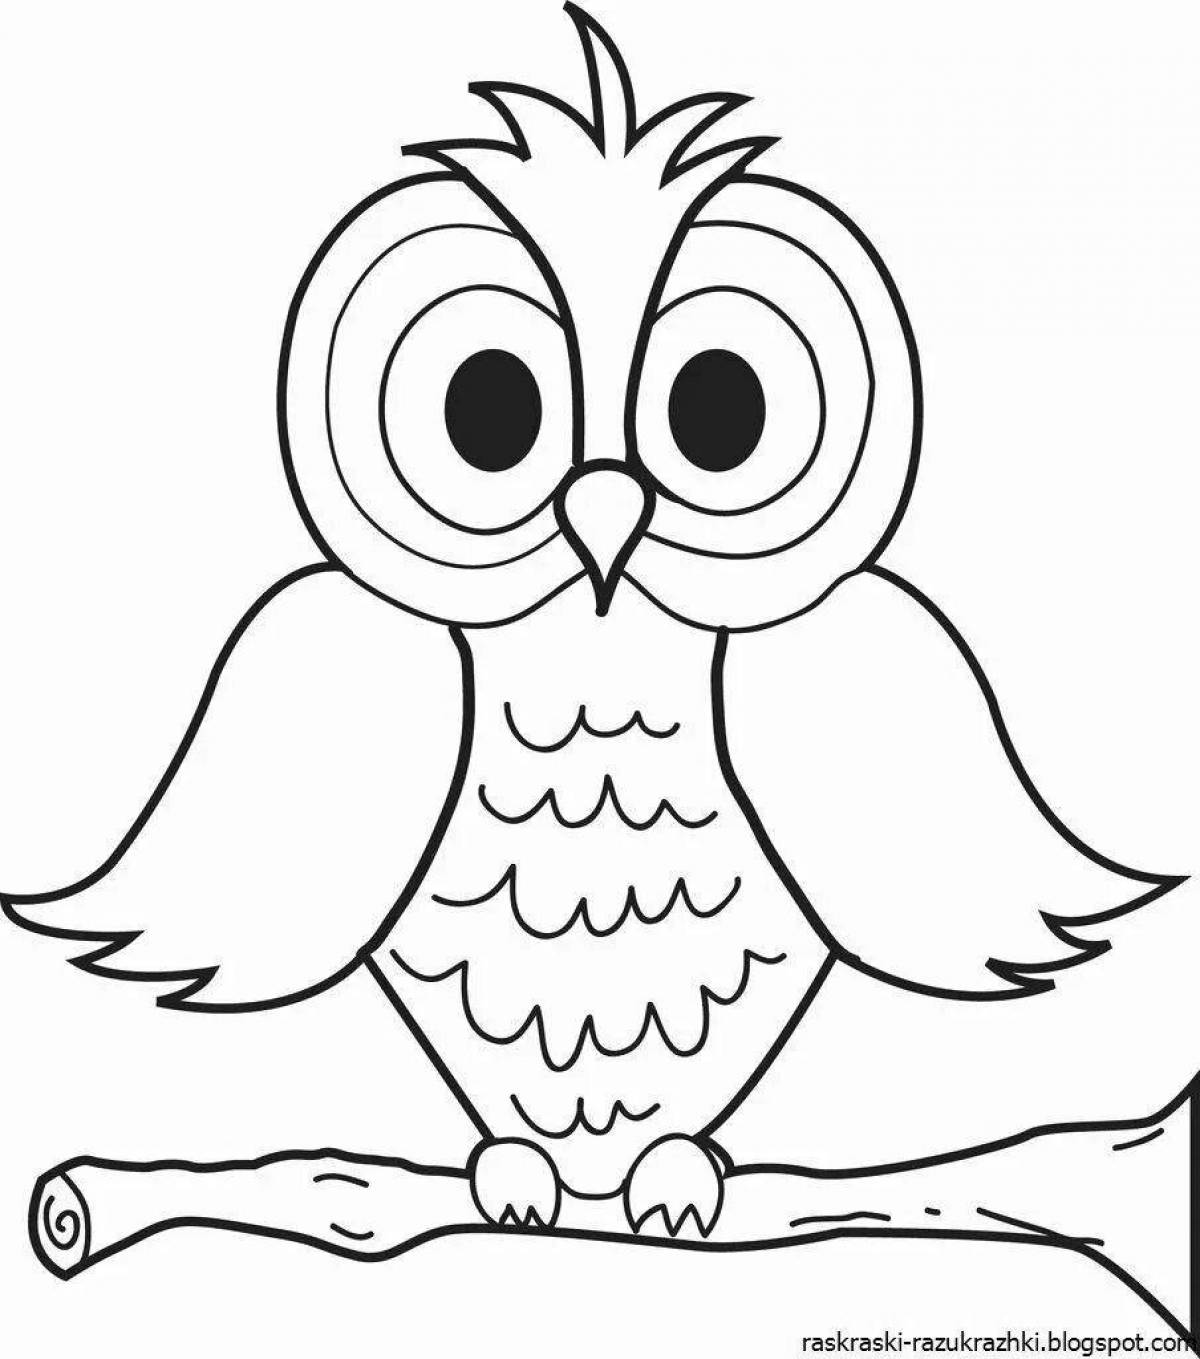 Раскраска radiant owlet для детей